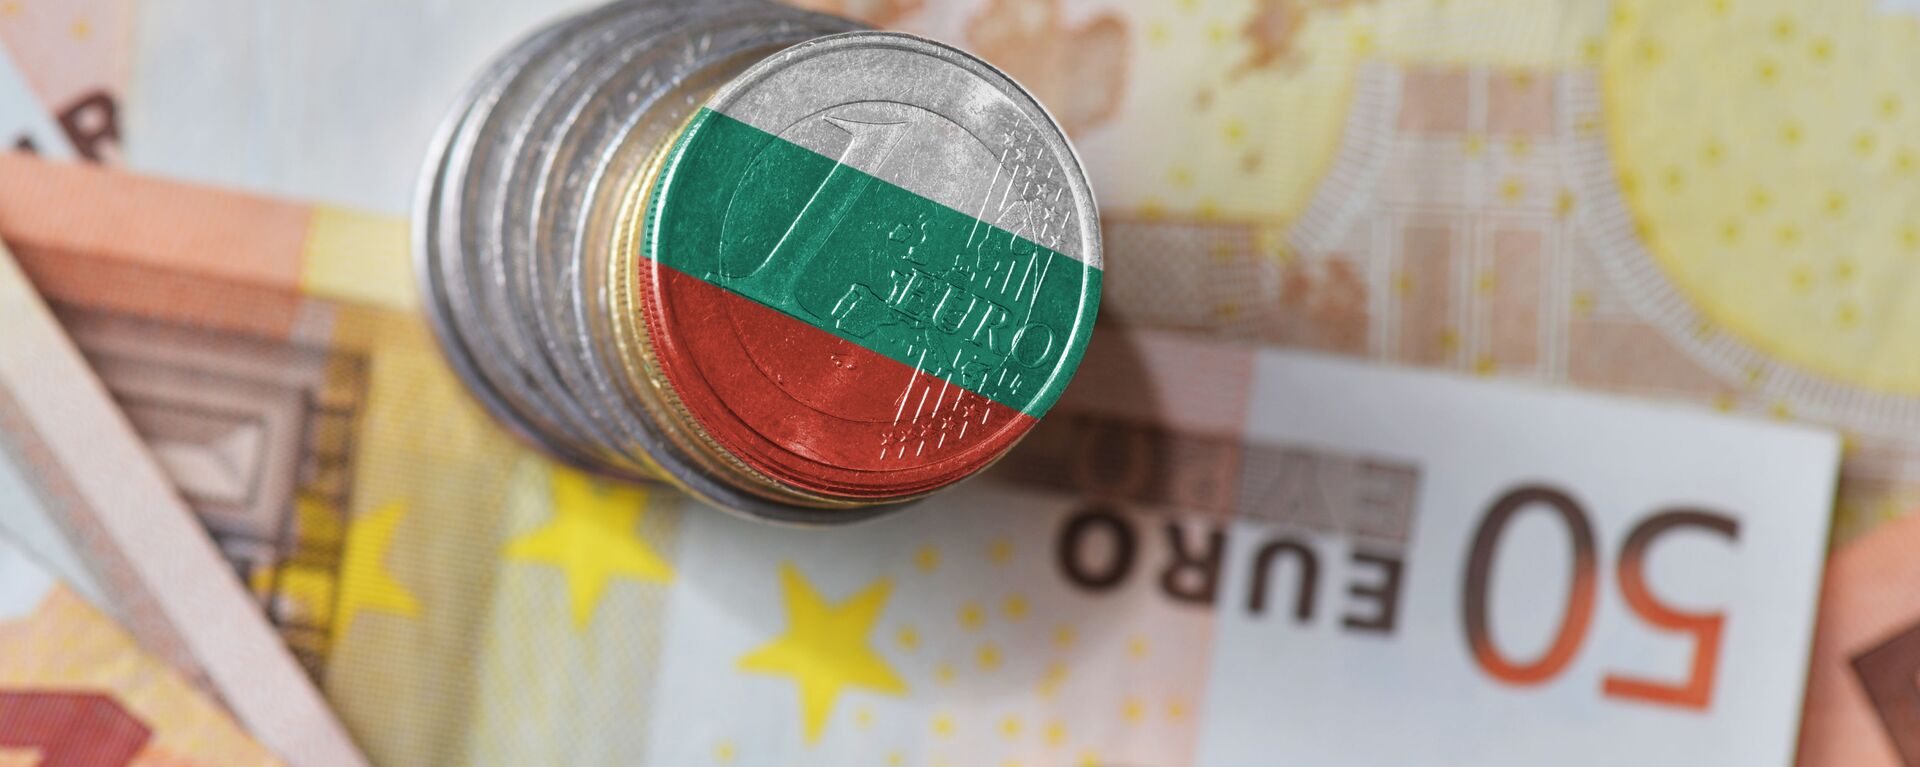 Евро у боји бугарске заставе - Sputnik Србија, 1920, 05.07.2021